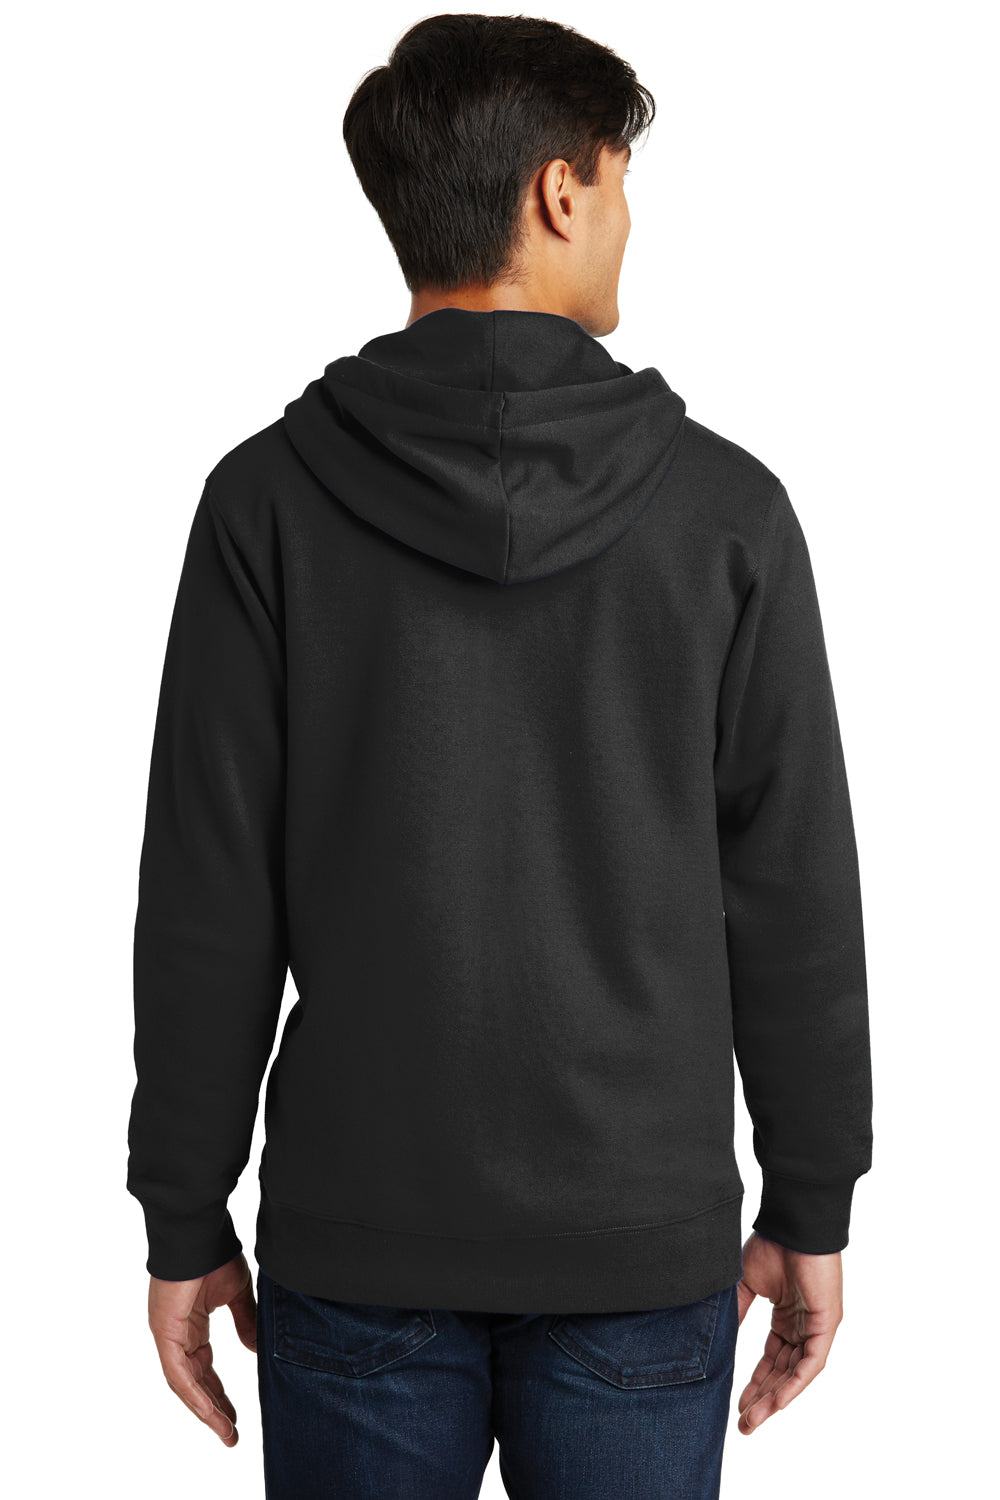 Port & Company PC850ZH Mens Fan Favorite Fleece Full Zip Hooded Sweatshirt Hoodie Black Back